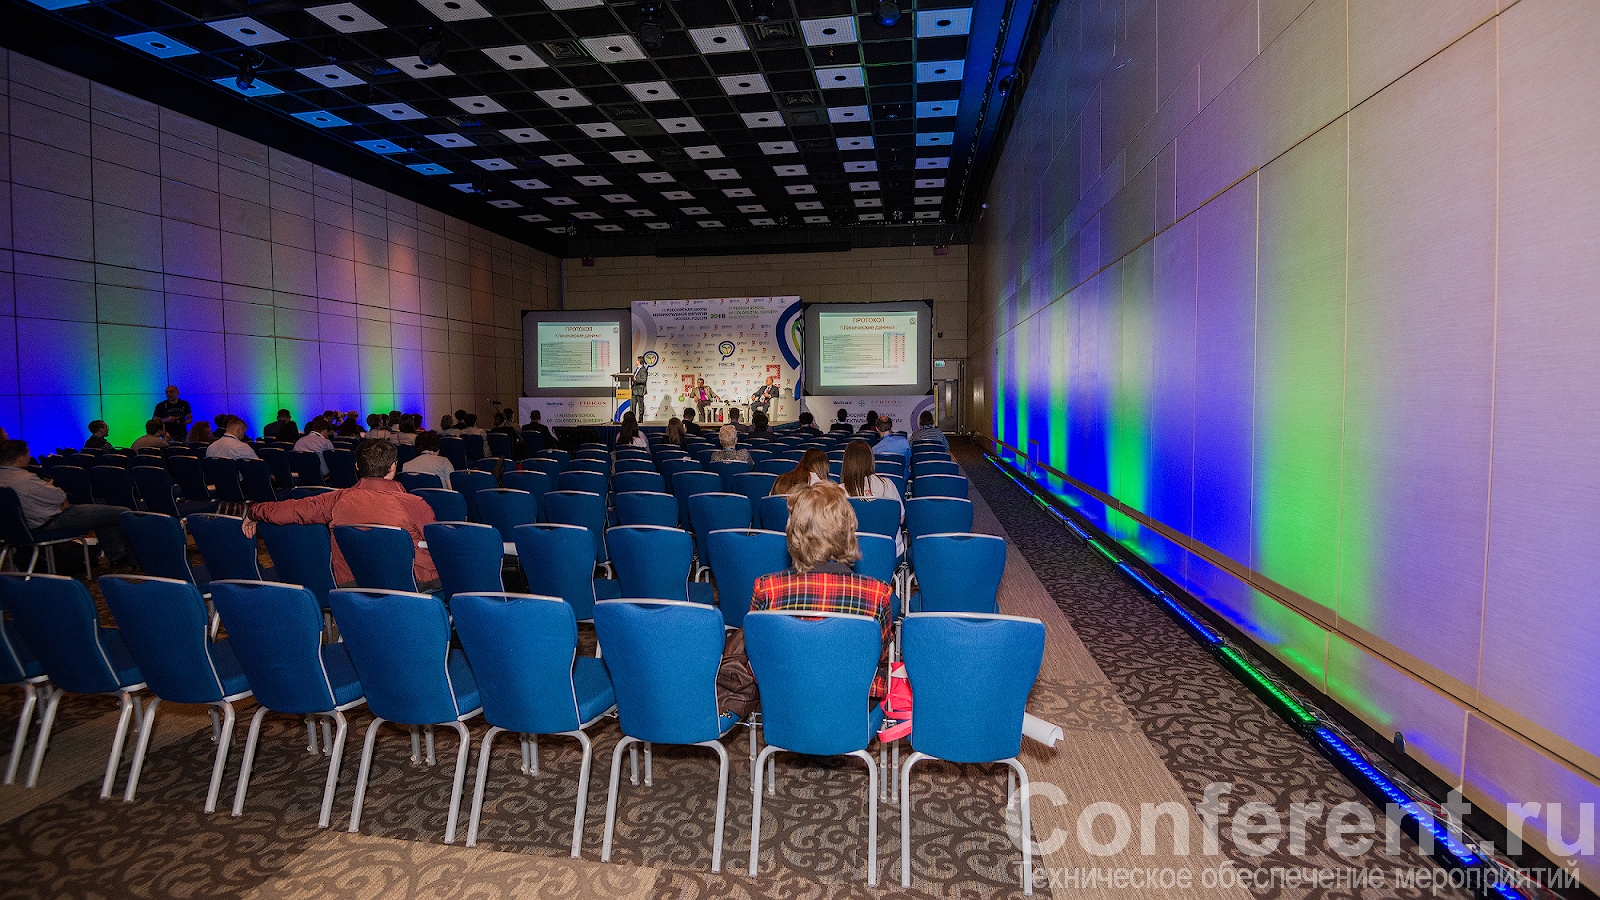 XI международная конференция РОКХ технически обеспечена компанией Conferent.ru 02.06.2018, Conferent.ru, Sunvote.ru